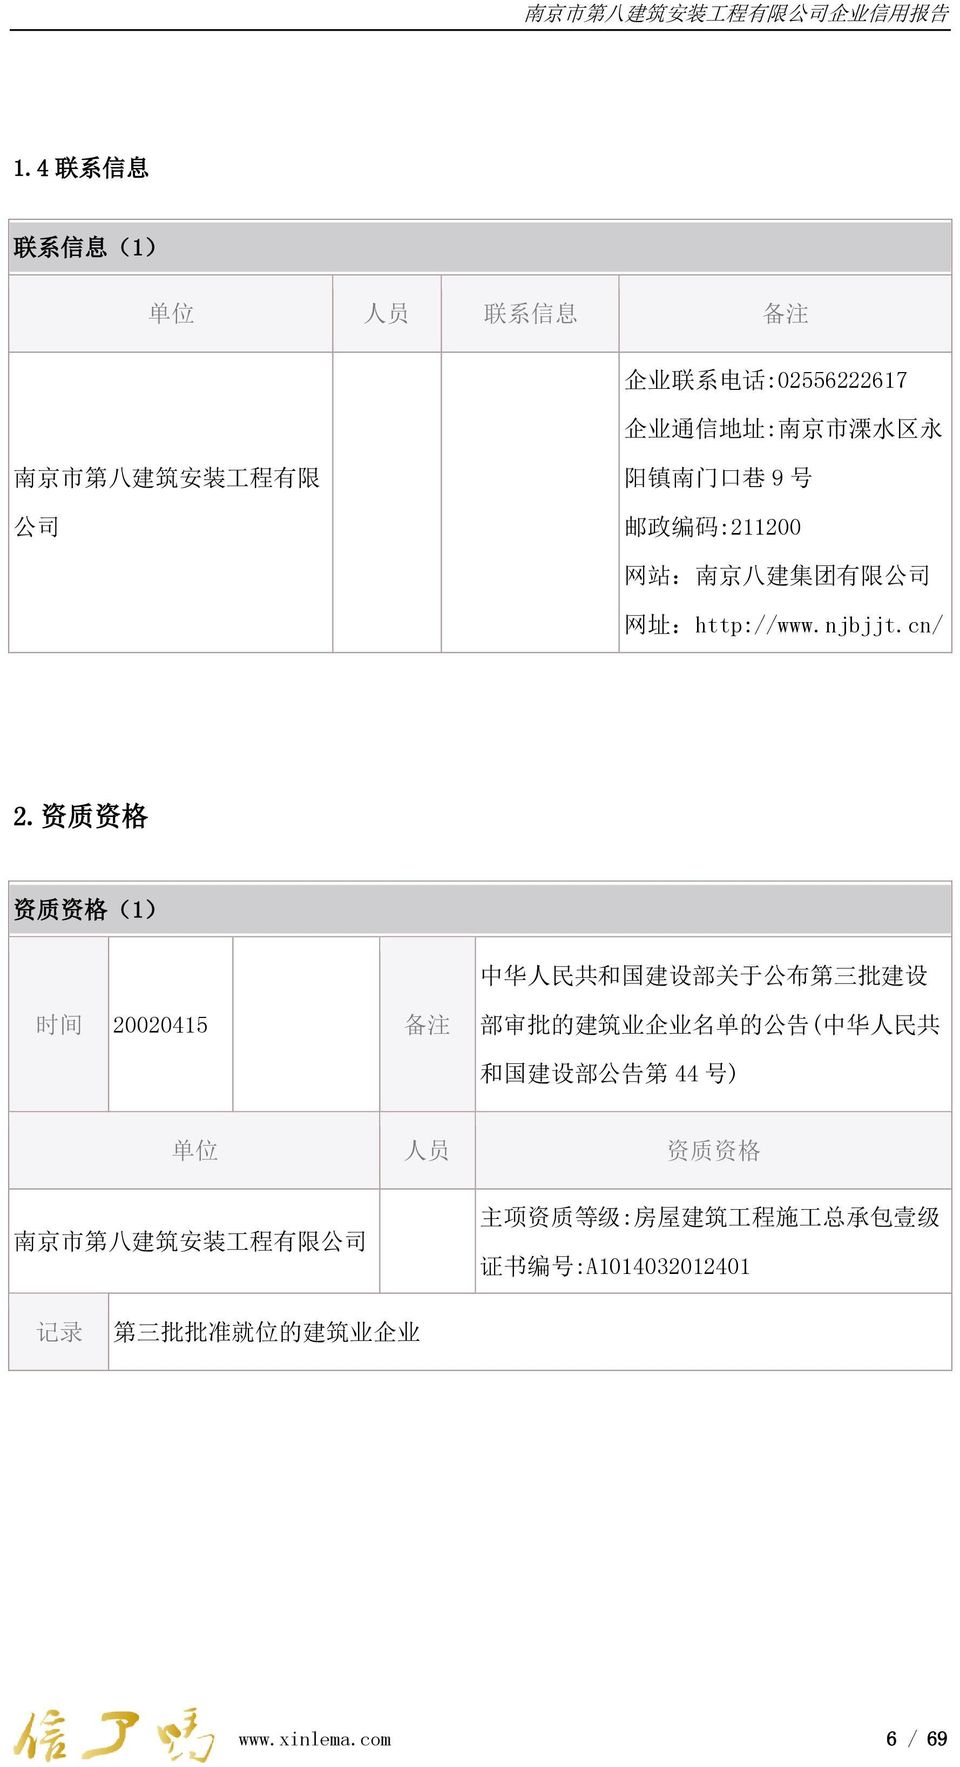 资 质 资 格 资 质 资 格 (1) 中 华 人 民 共 和 国 建 设 部 关 于 公 布 第 三 批 建 设 时 间 20020415 部 审 批 的 建 筑 业 企 业 名 单 的 公 告 ( 中 华 人 民 共 和 国 建 设